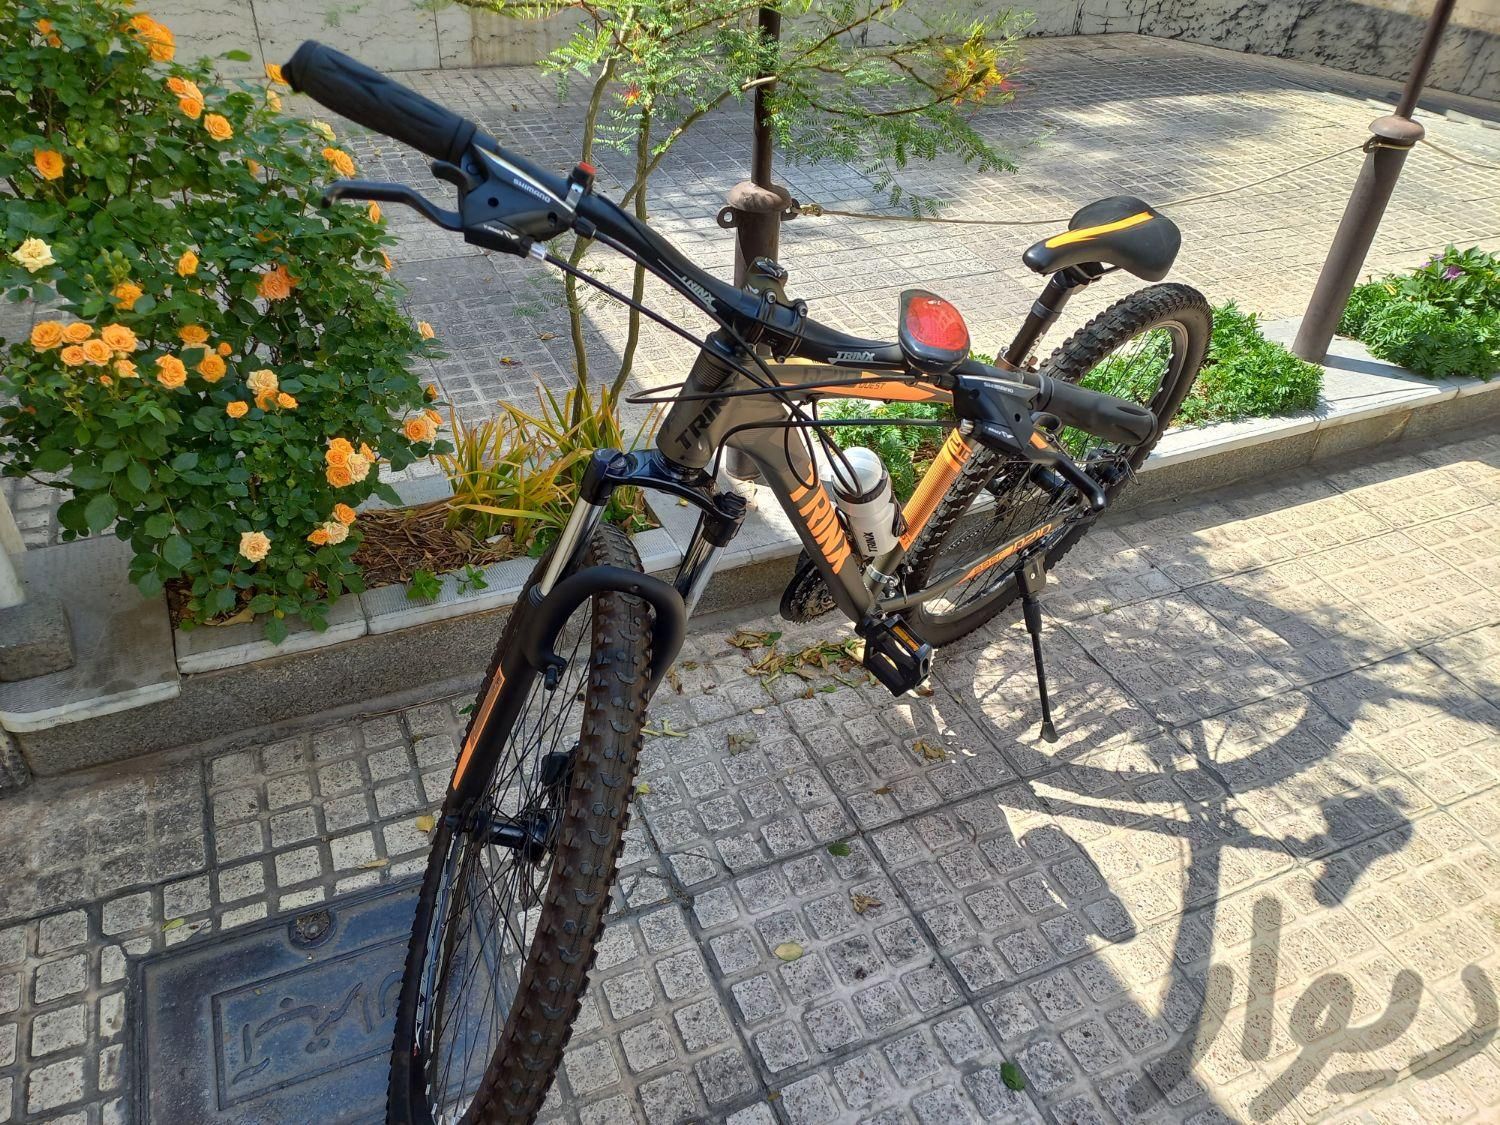 دوچرخه کاملا سالم دارای وسایل جانبی|دوچرخه، اسکیت، اسکوتر|تهران, صادقیه|دیوار